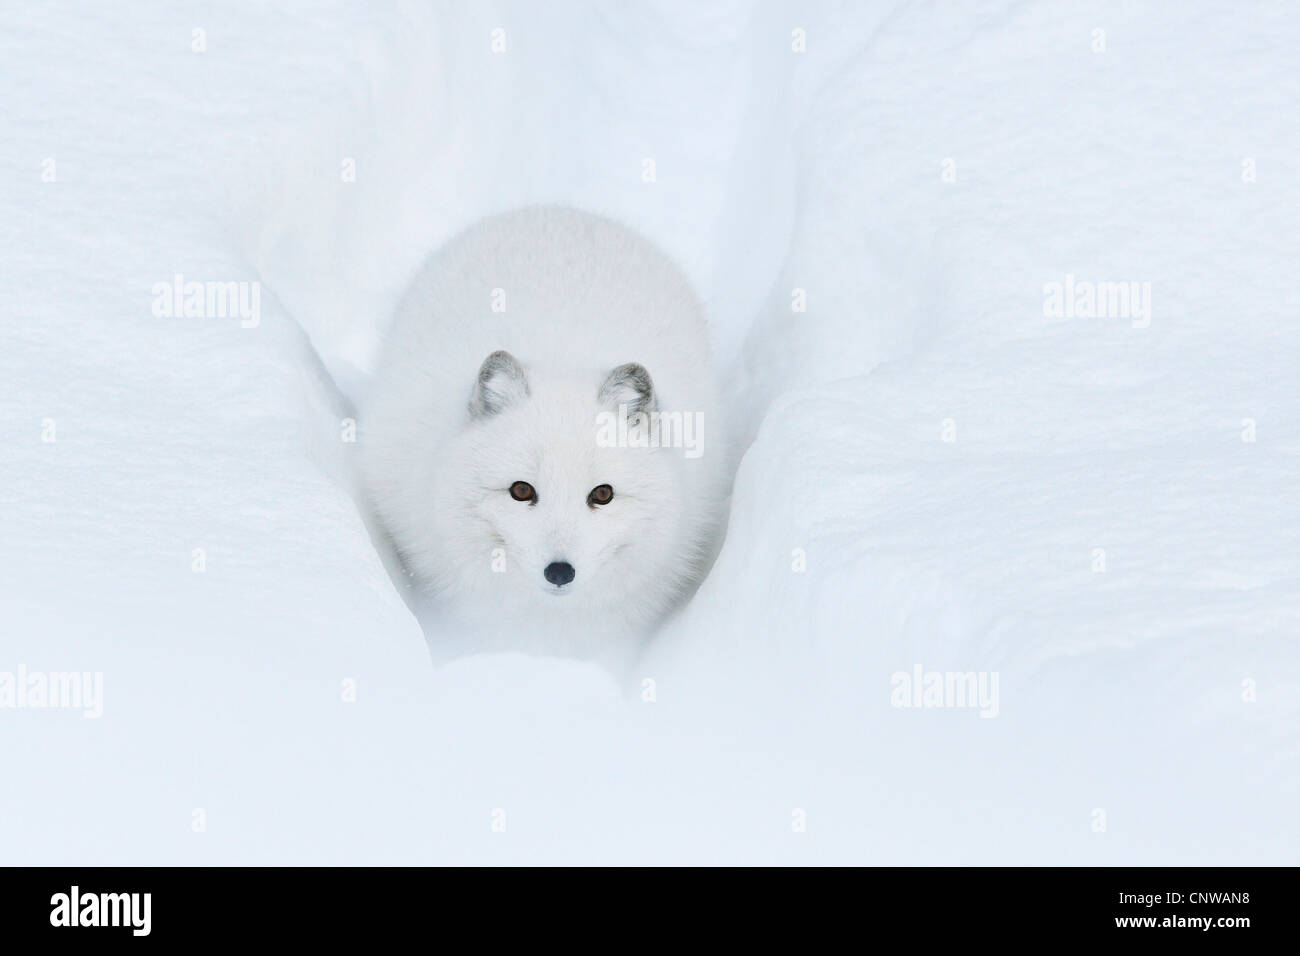 Le renard arctique, le renard polaire (Alopex lagopus, Vulpes lagopus), marche à pied un chemin à travers la neige profonde, la Norvège, l'Namdal, Troendelag Banque D'Images